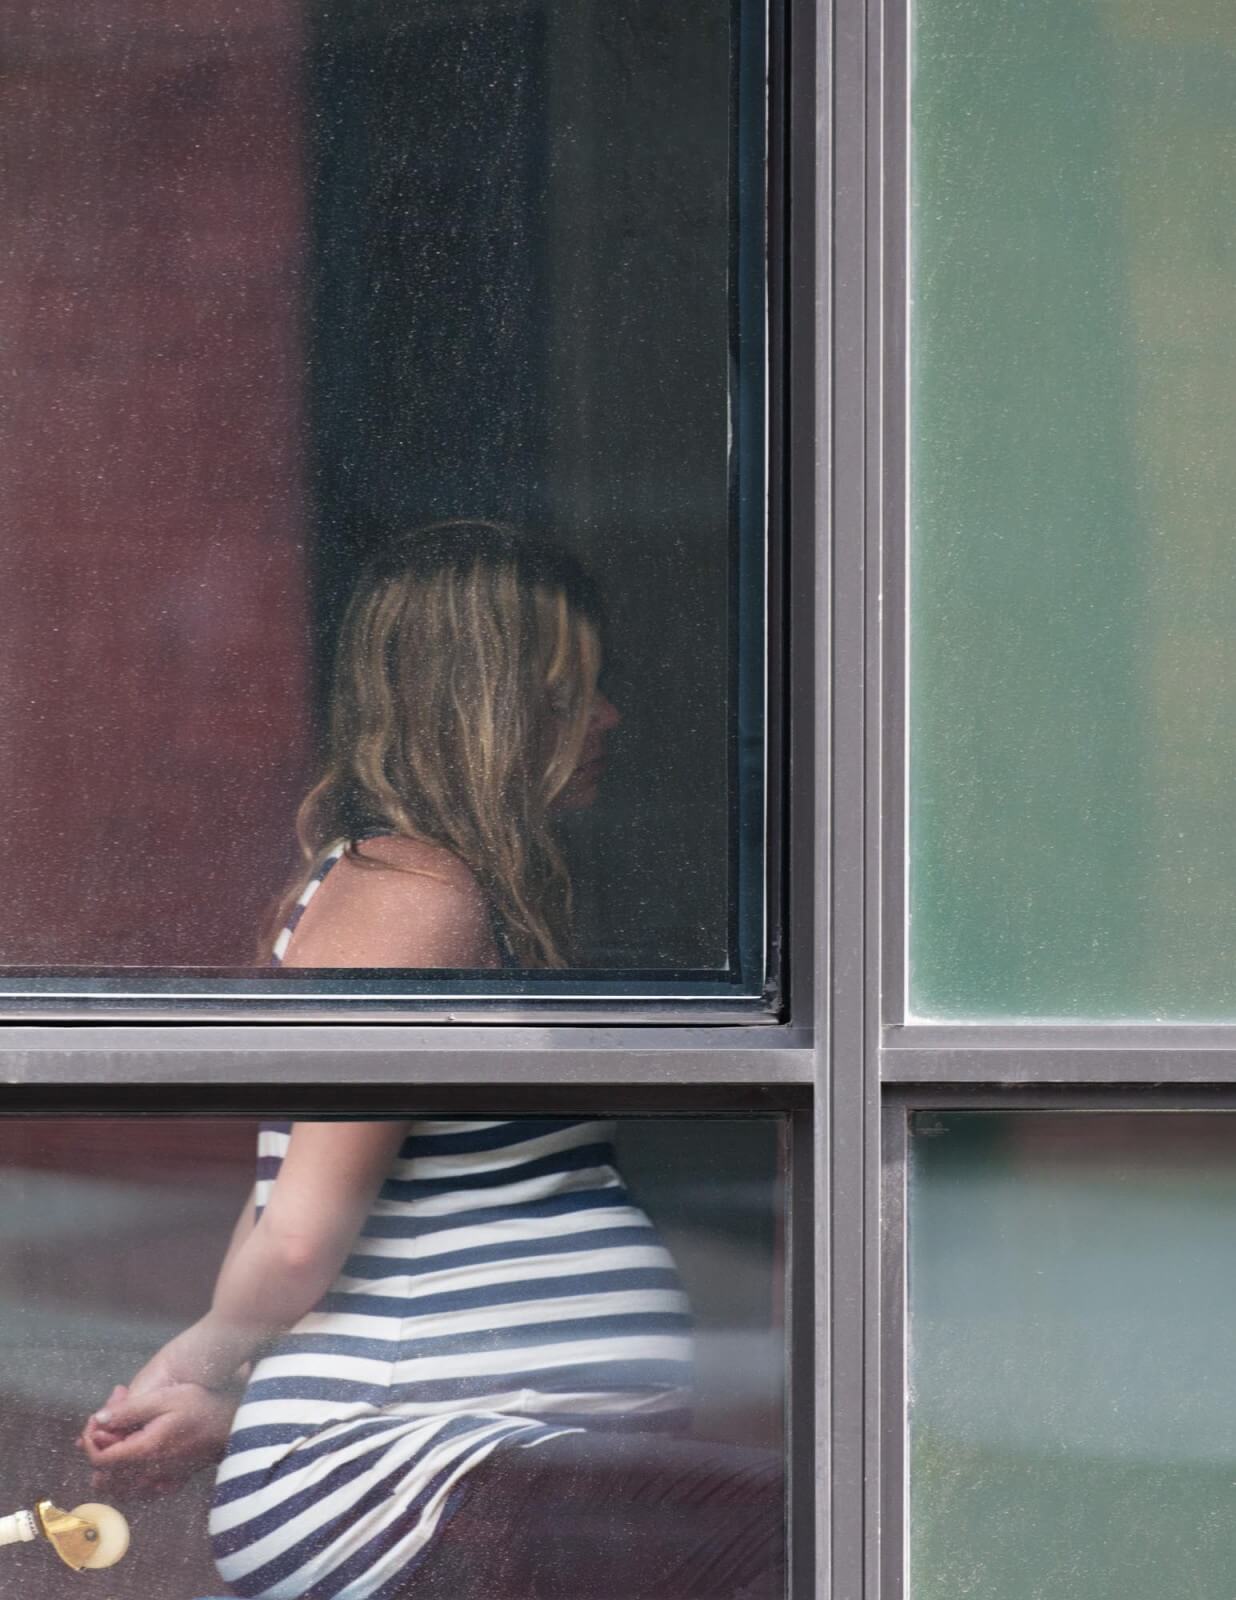 Видео частные подглядывание. Арне Свенсон. Поглядел в окно. Девушка в соседнем окне.